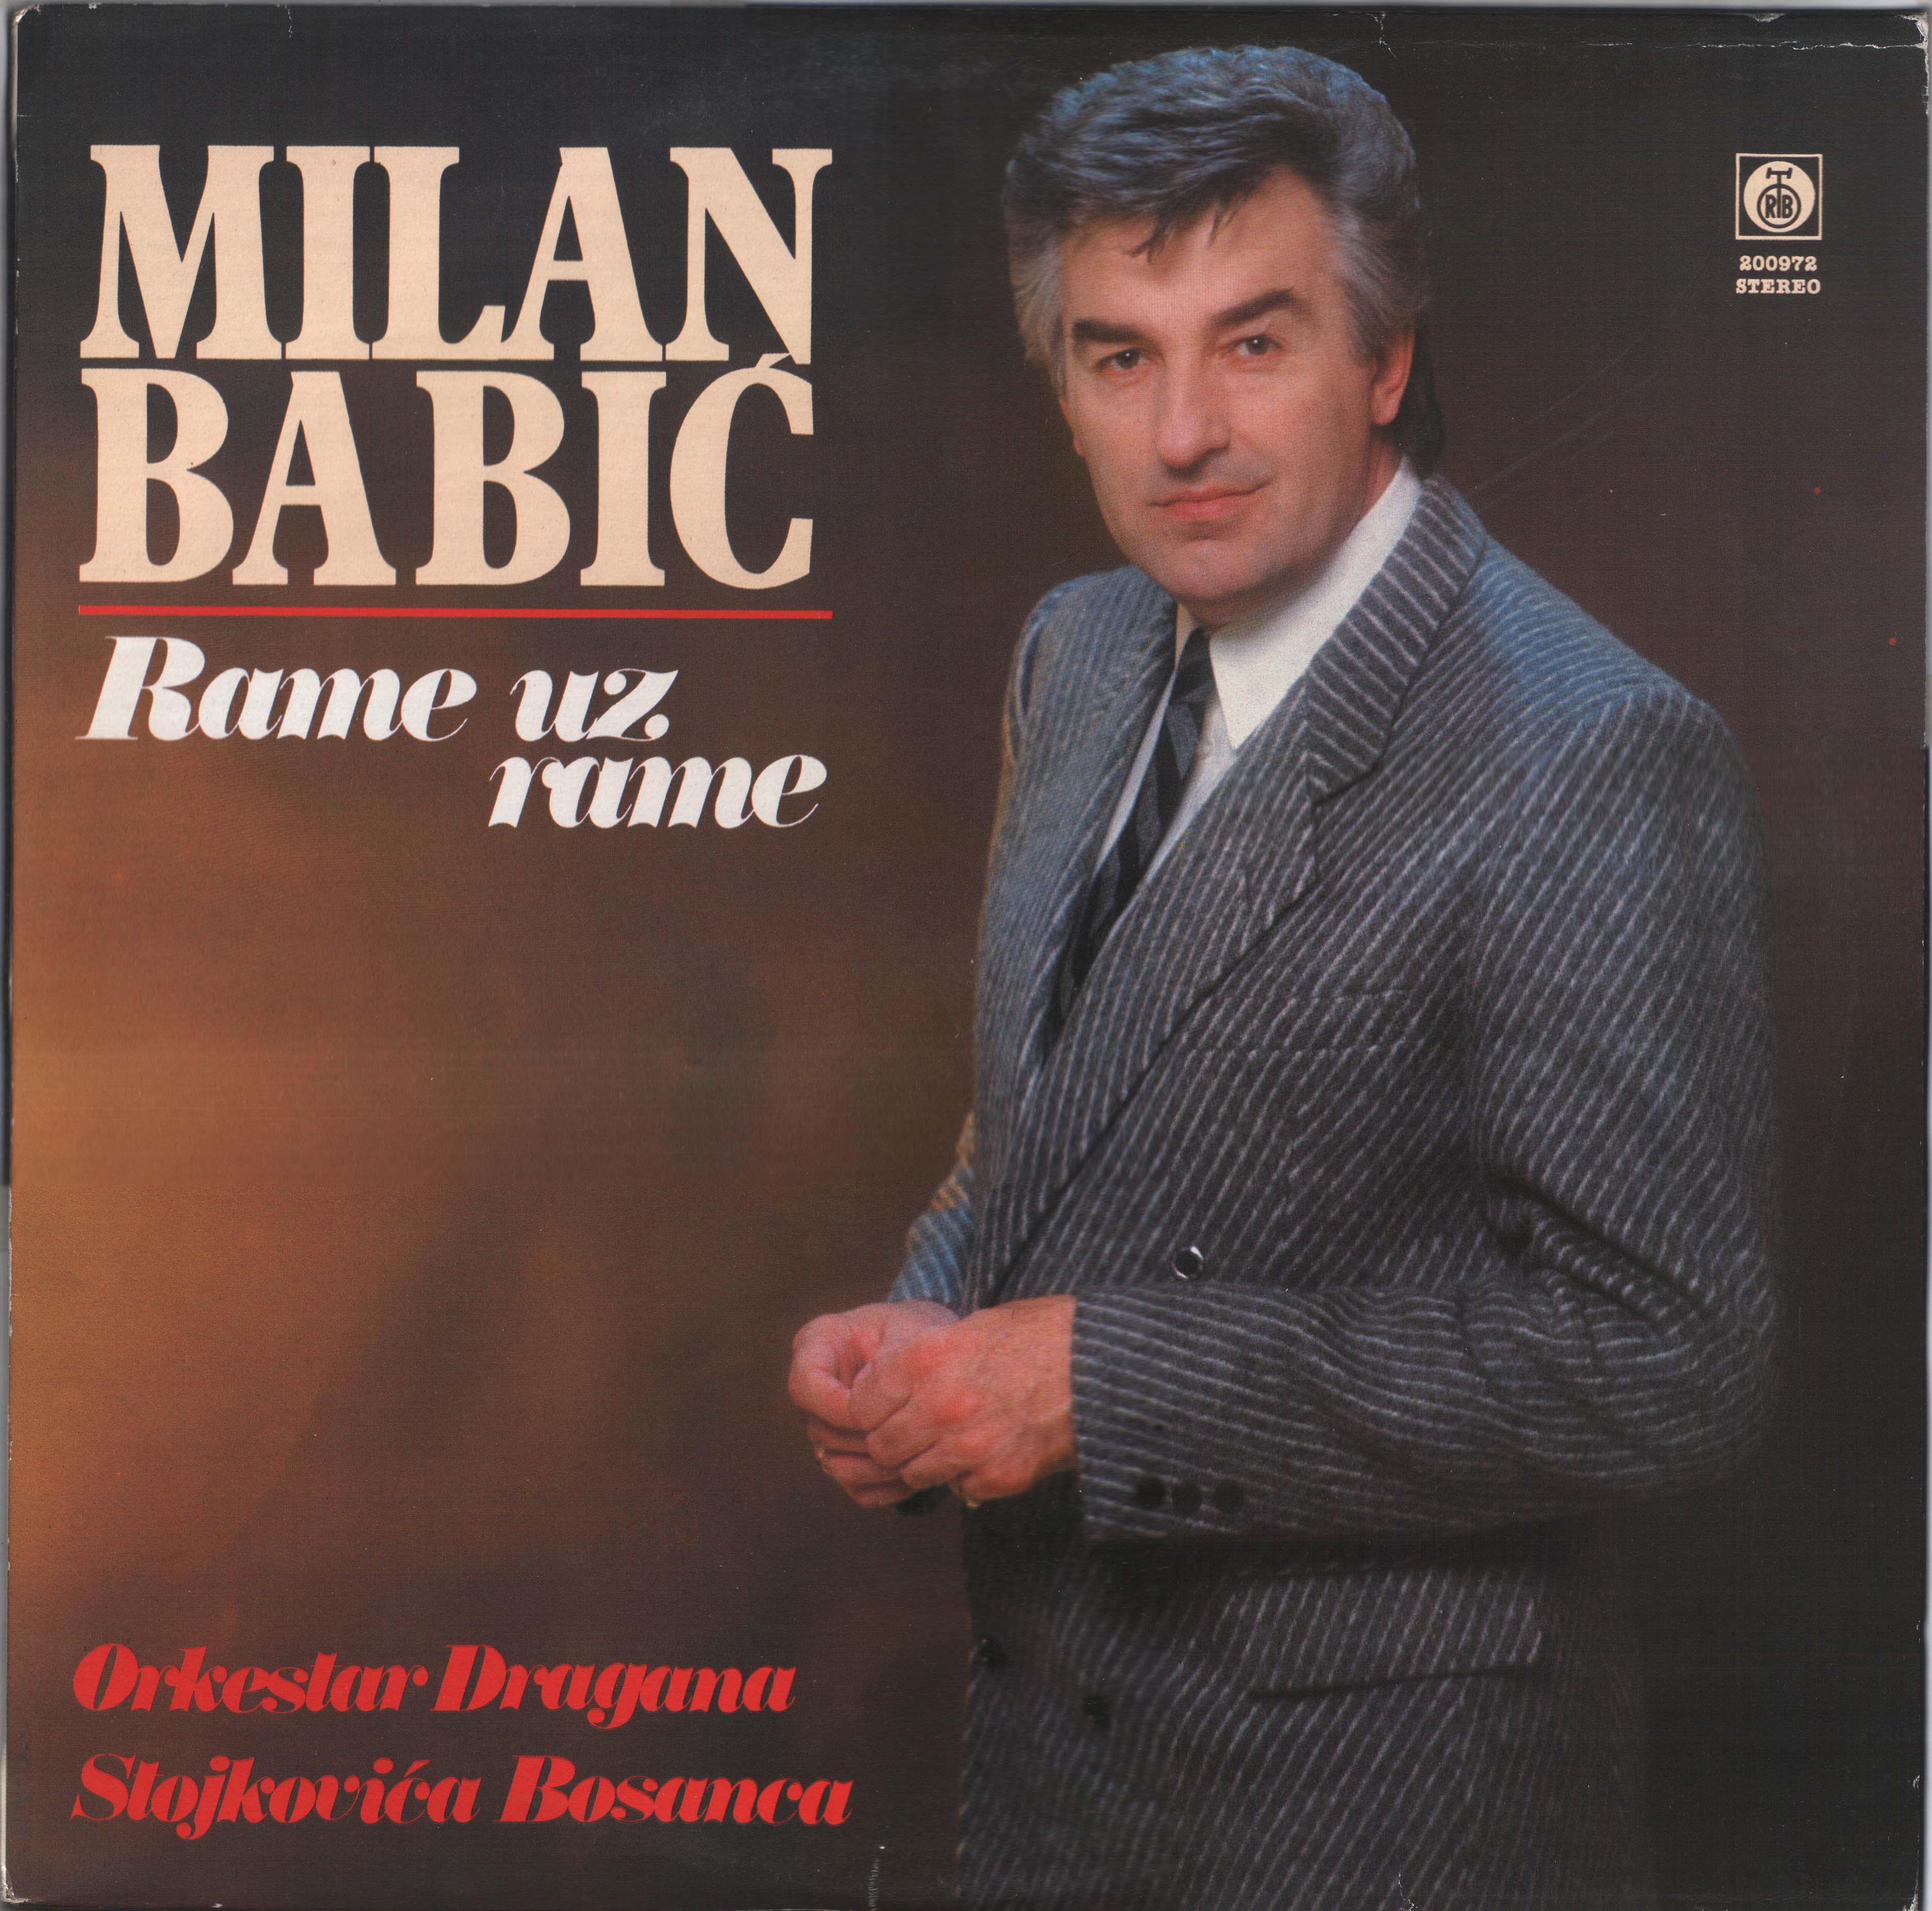 Milan Babic 1989 P